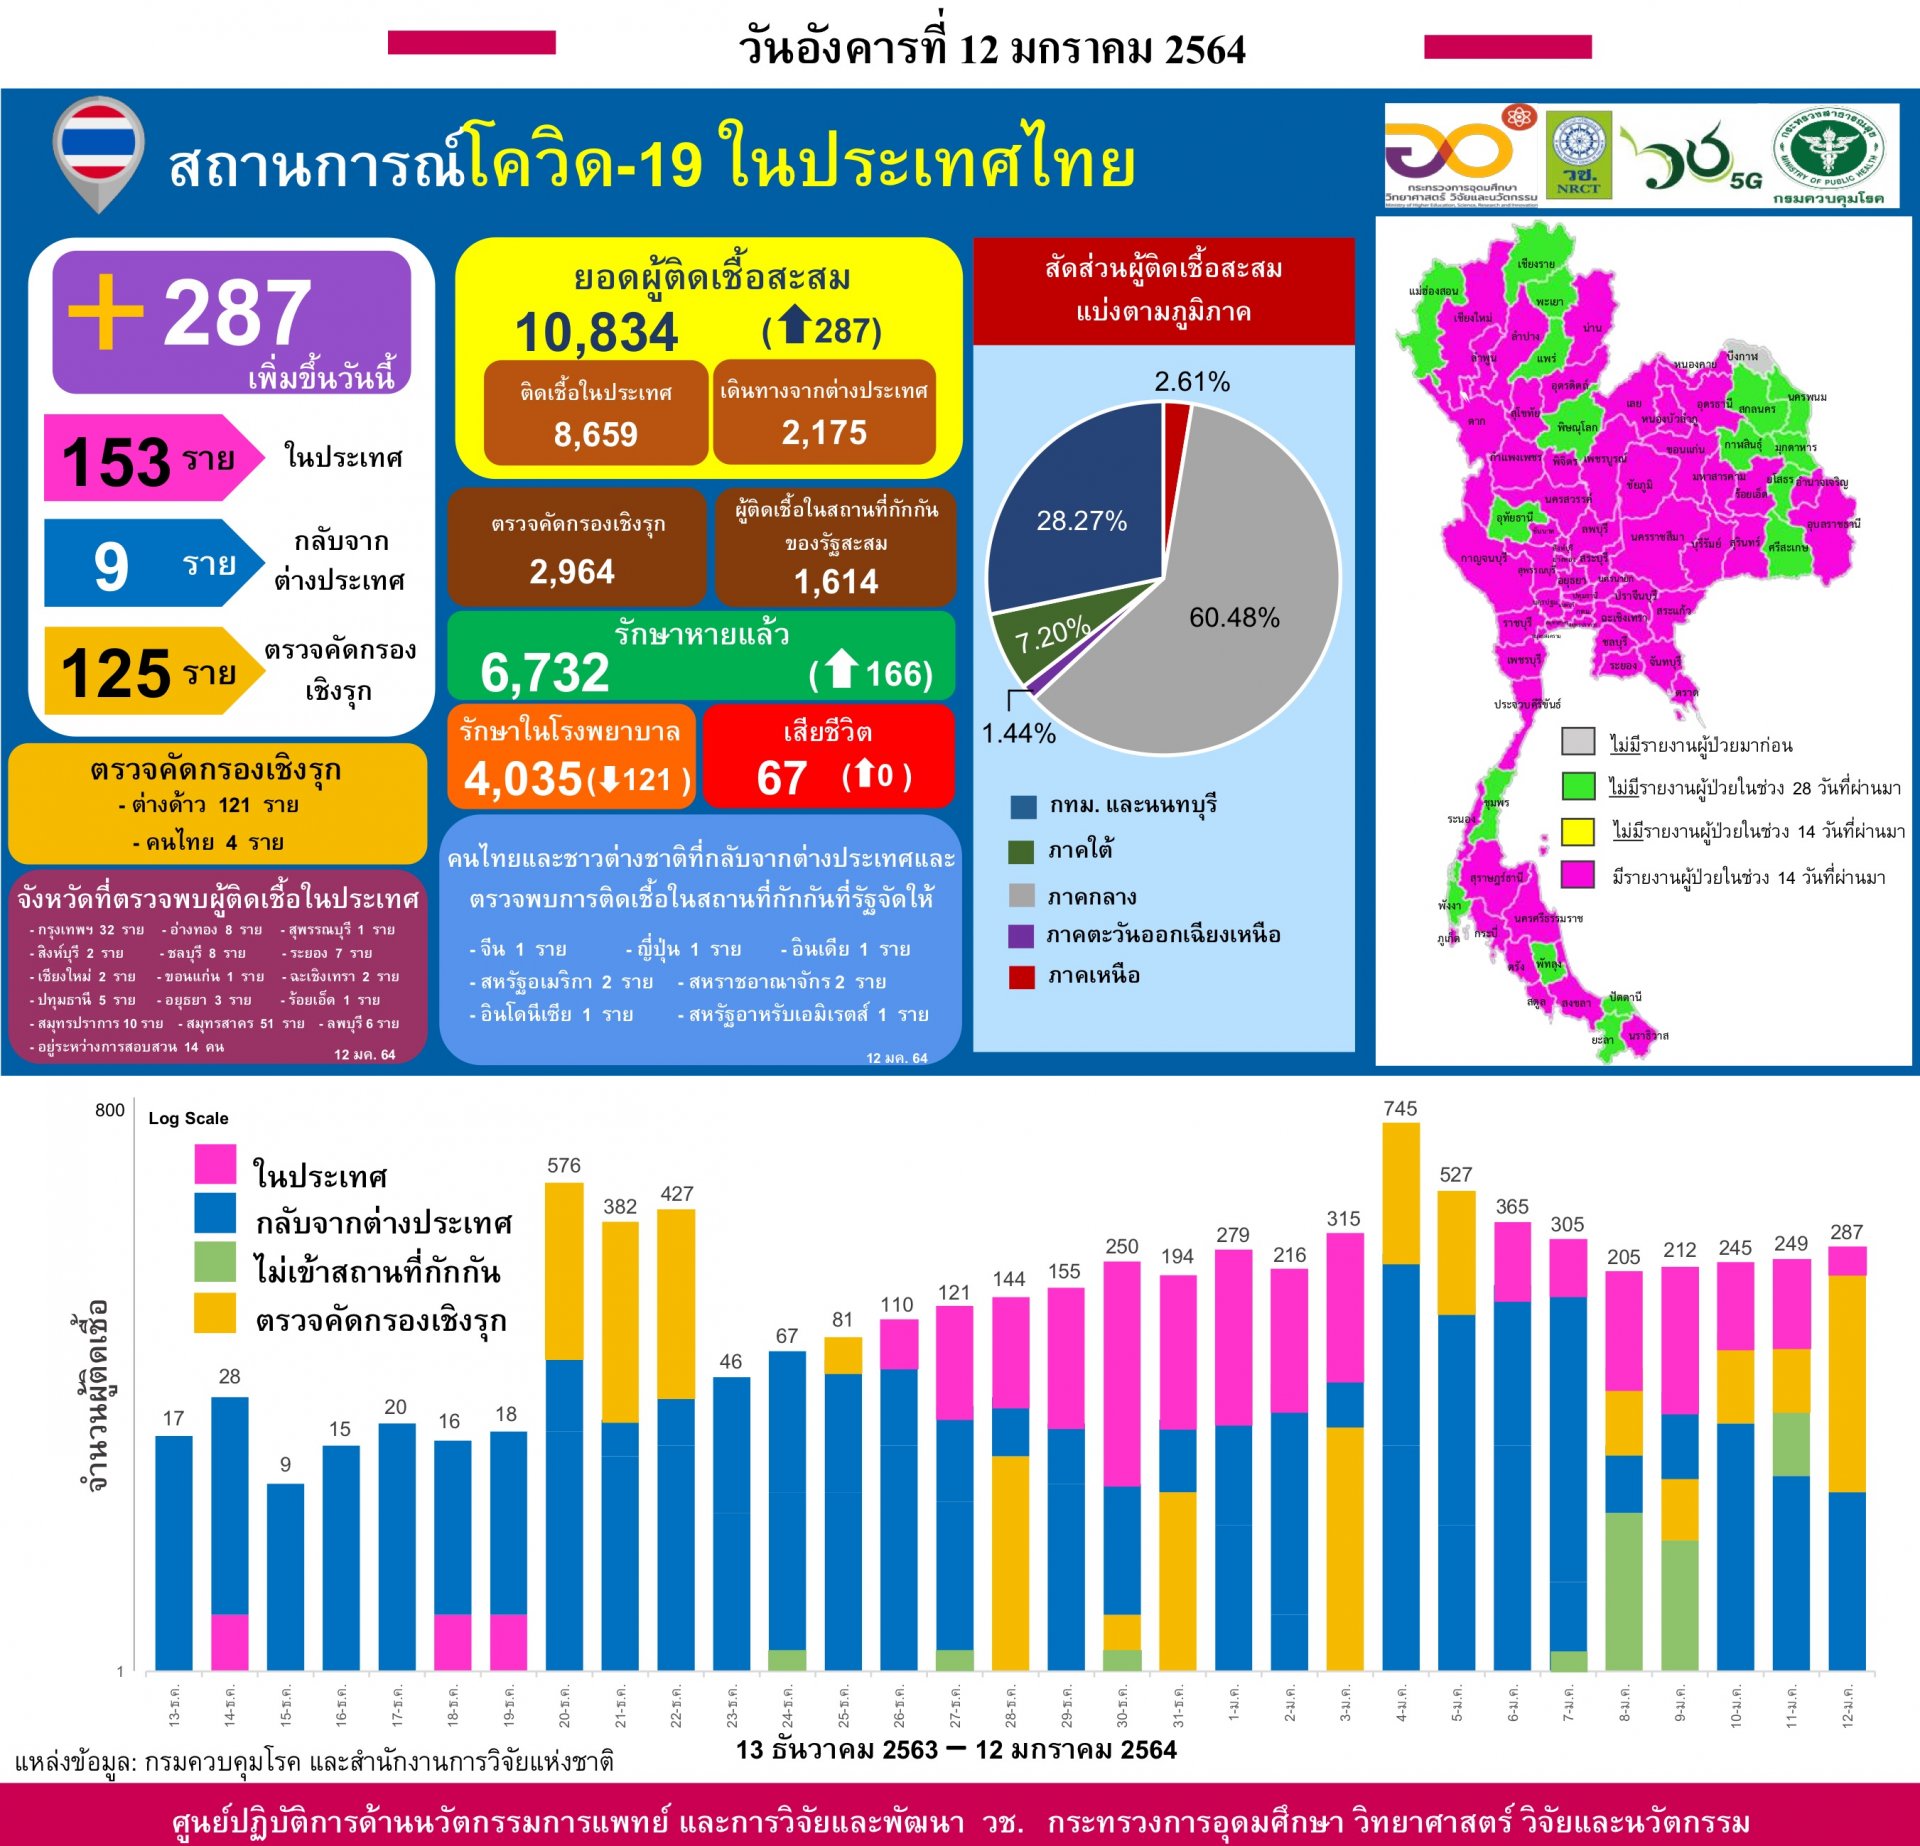 รายงานข้อมูลสถานการณ์การติดเชื้อ โควิด-19  ณ วันอังคารที่ 12 มกราคม 2564  ประเทศไทย